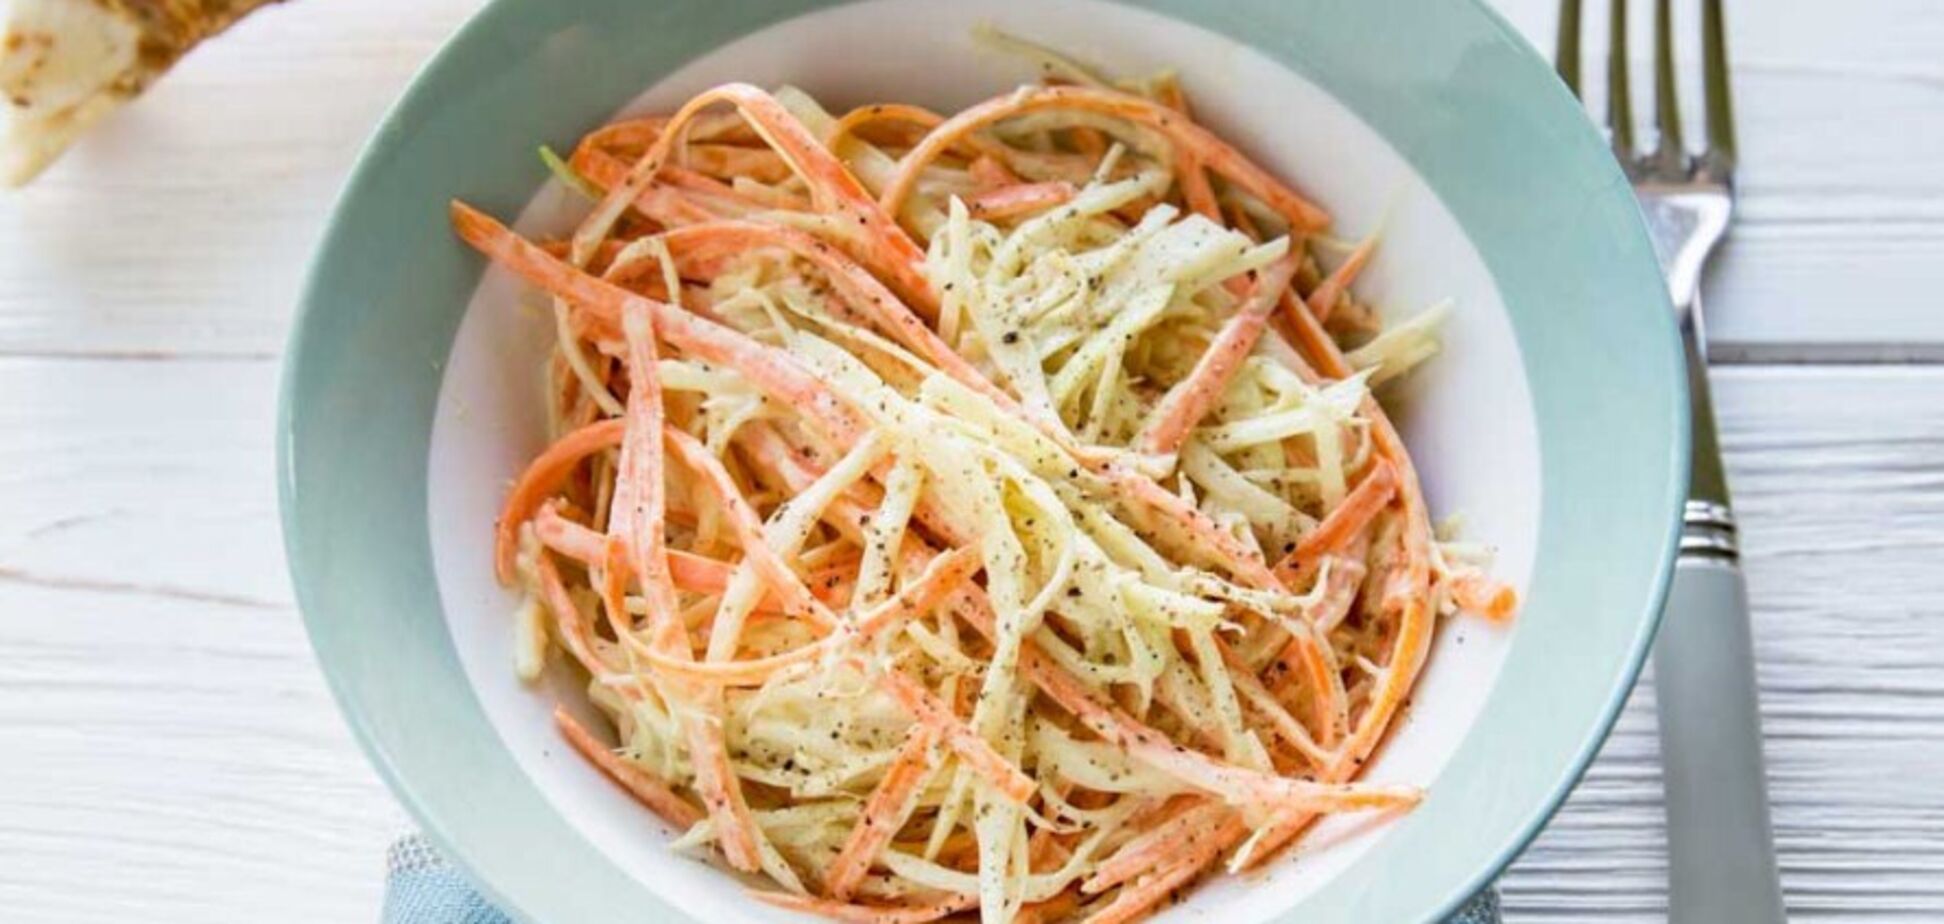 Бюджетный салат 'Коул слоу' за 5 минут: рецепт с капустой и морковью